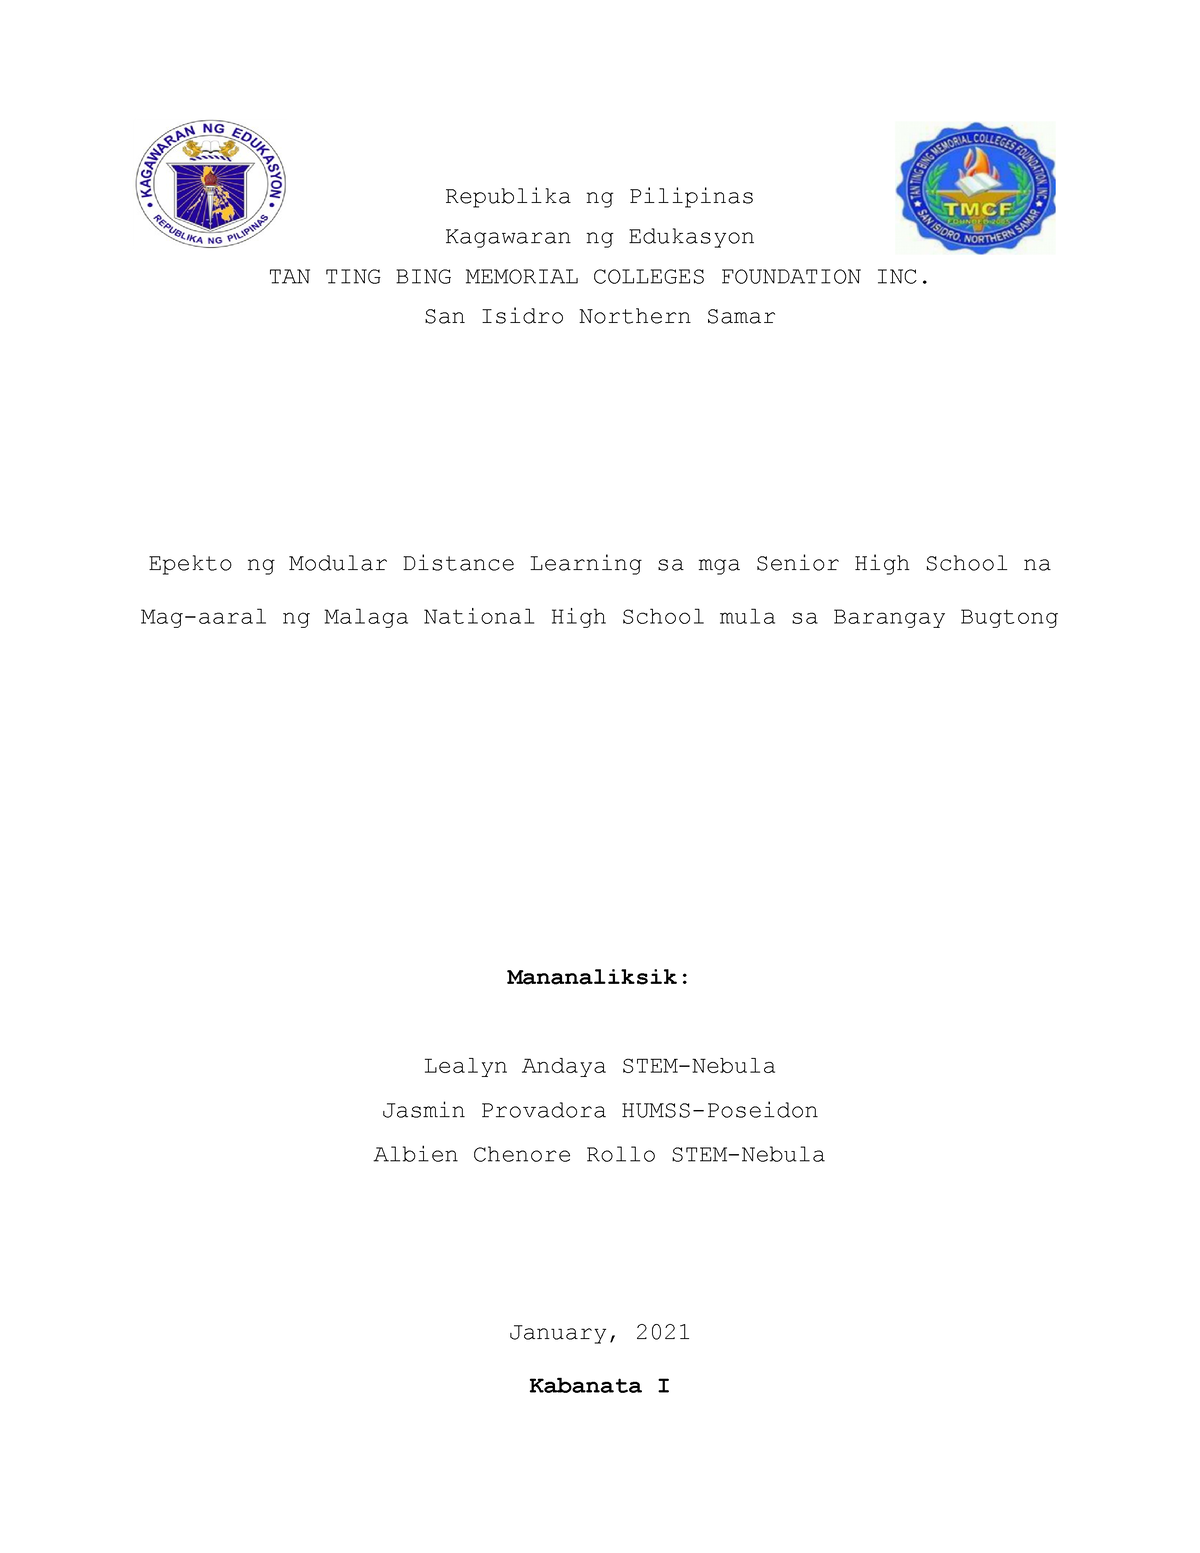 Epekto Ng Modular Distance Learning Sa Mga Mag Republika Ng Pilipinas Kagawaran Ng Edukasyon 0765